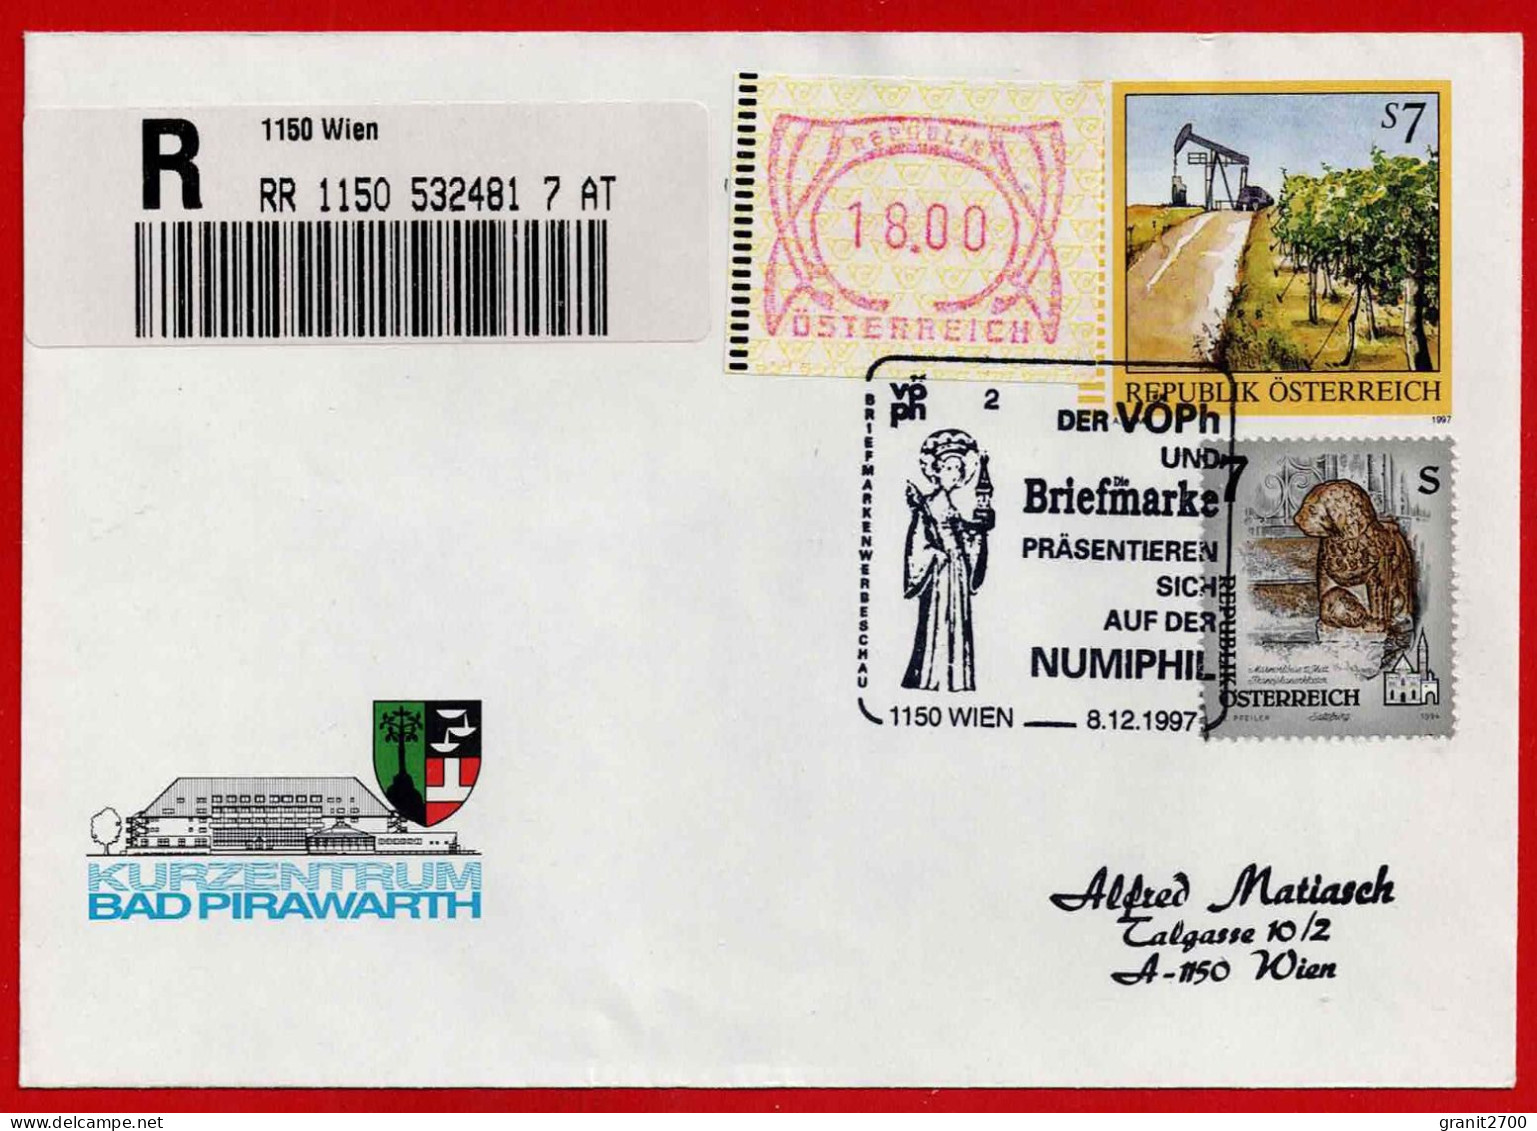 GS - Brief Reko Mit Stempel 1150 Wien - Der VÖPh Und Briefmarke Präsentieren Sich Auf Der Numiphil  - Vom 8.12.1997 - Covers & Documents